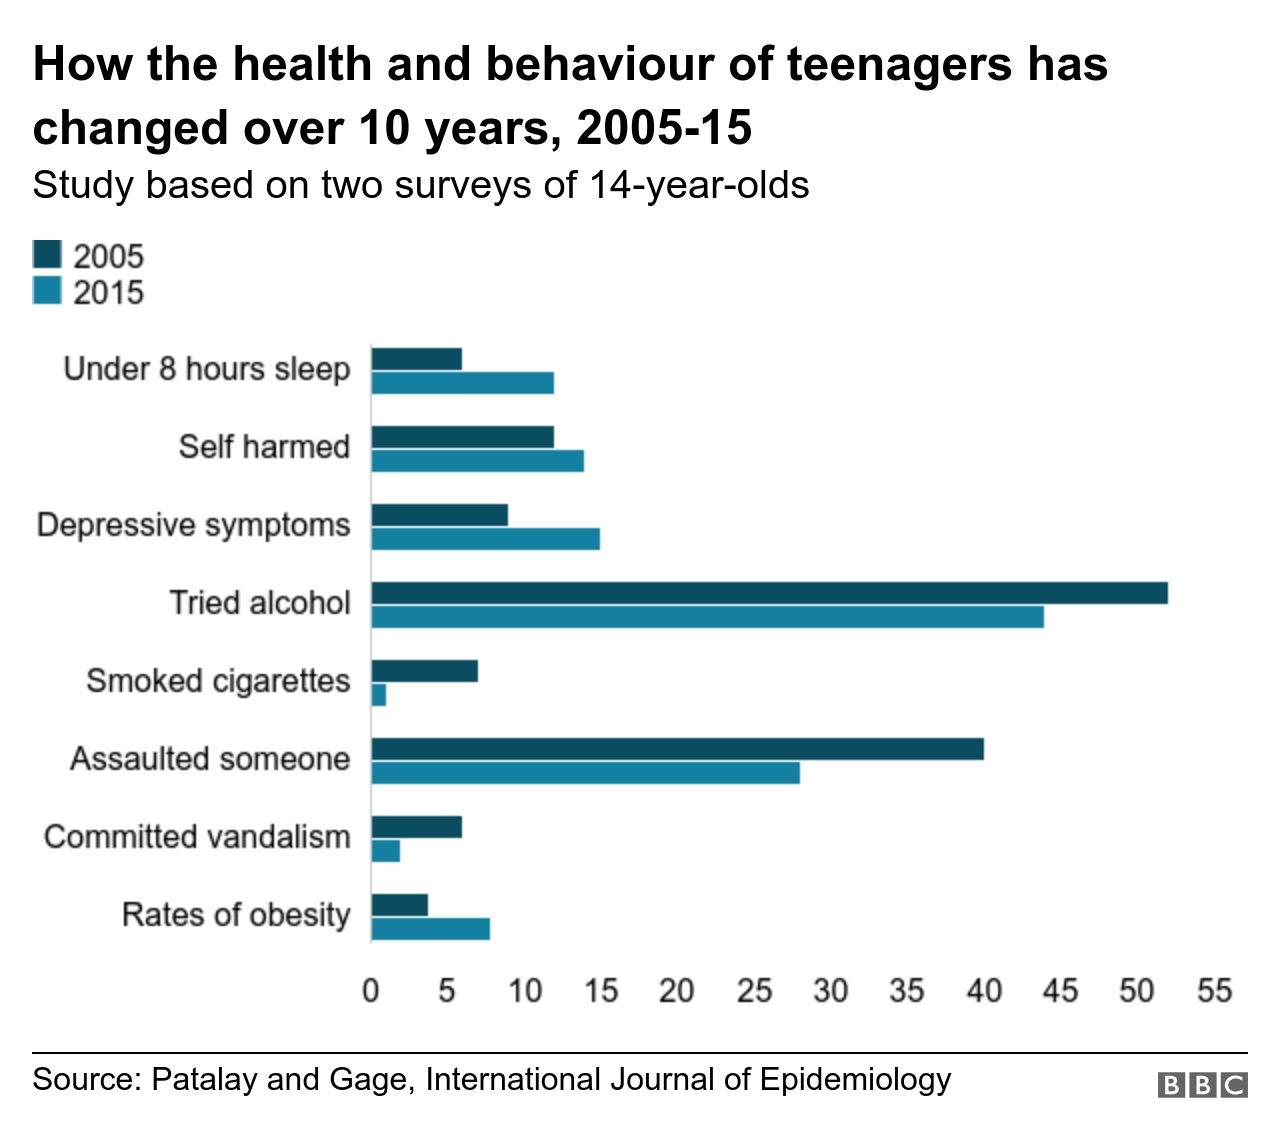 self harming in teens